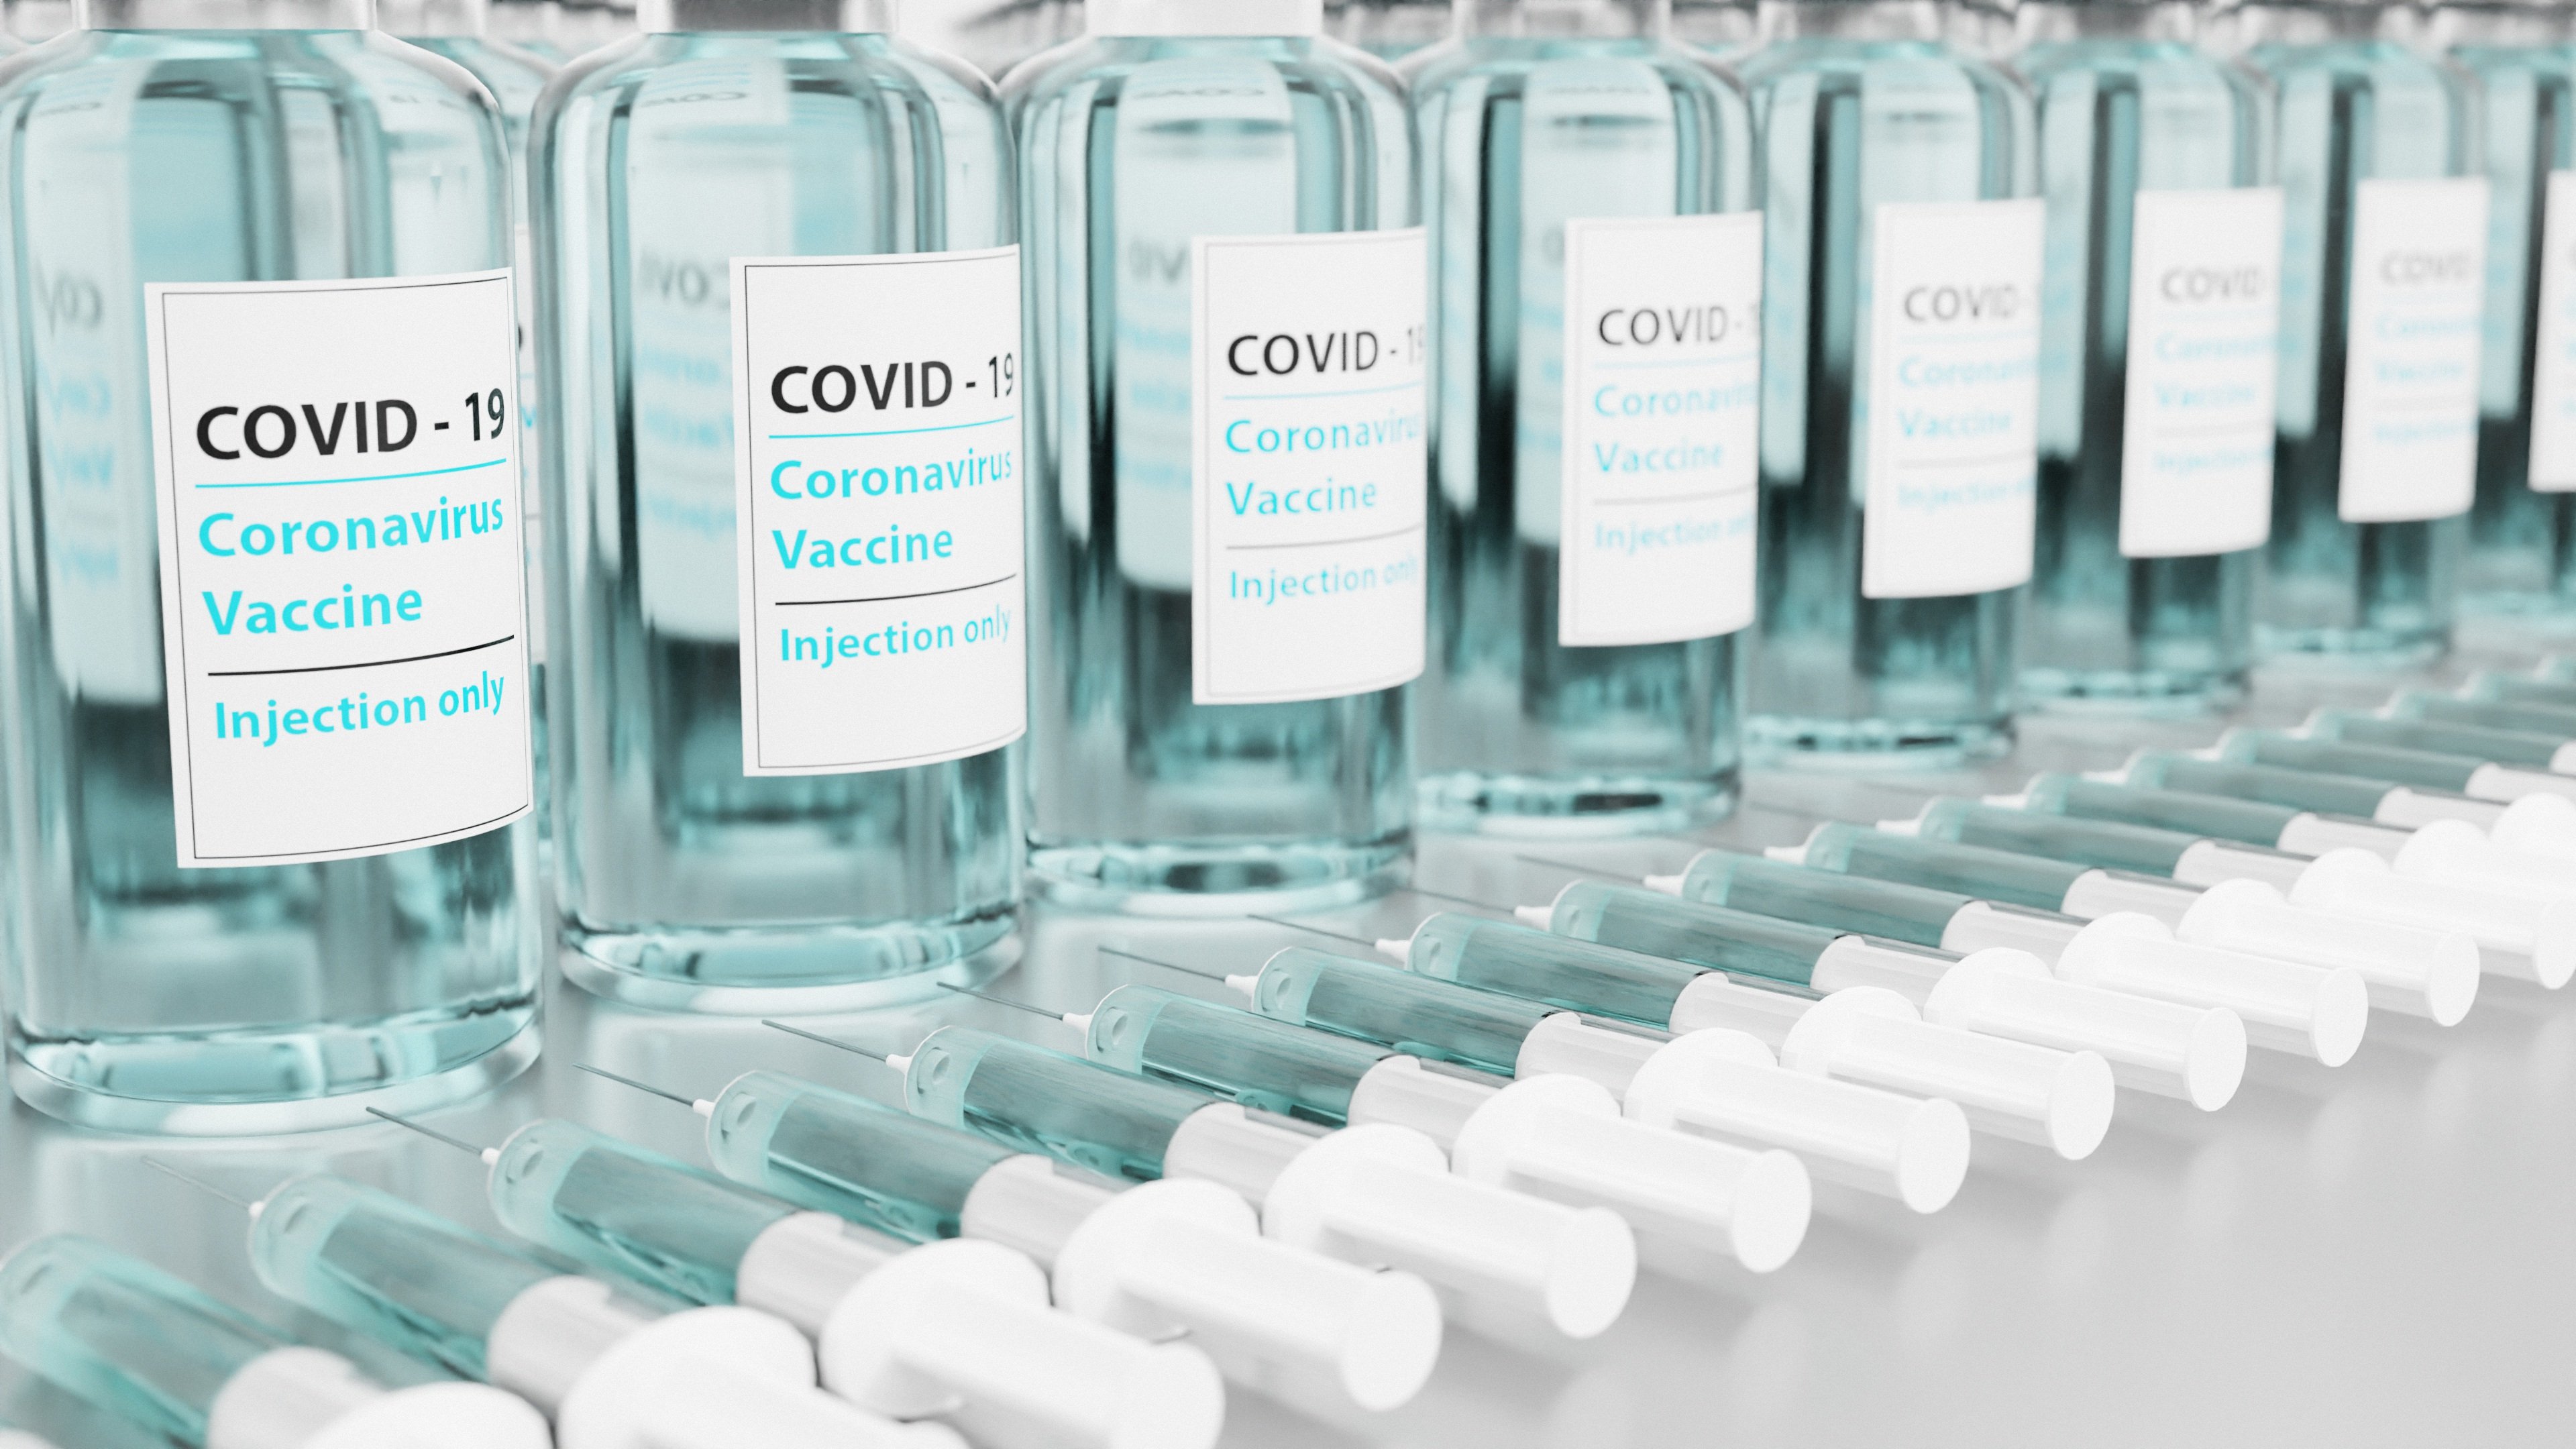 koronavírus vakcina oltás védőoltás covid-19 sinopharm pfizer astrazeneca szputnyik adat adatmozi statisztika ksh adatvizualizáció